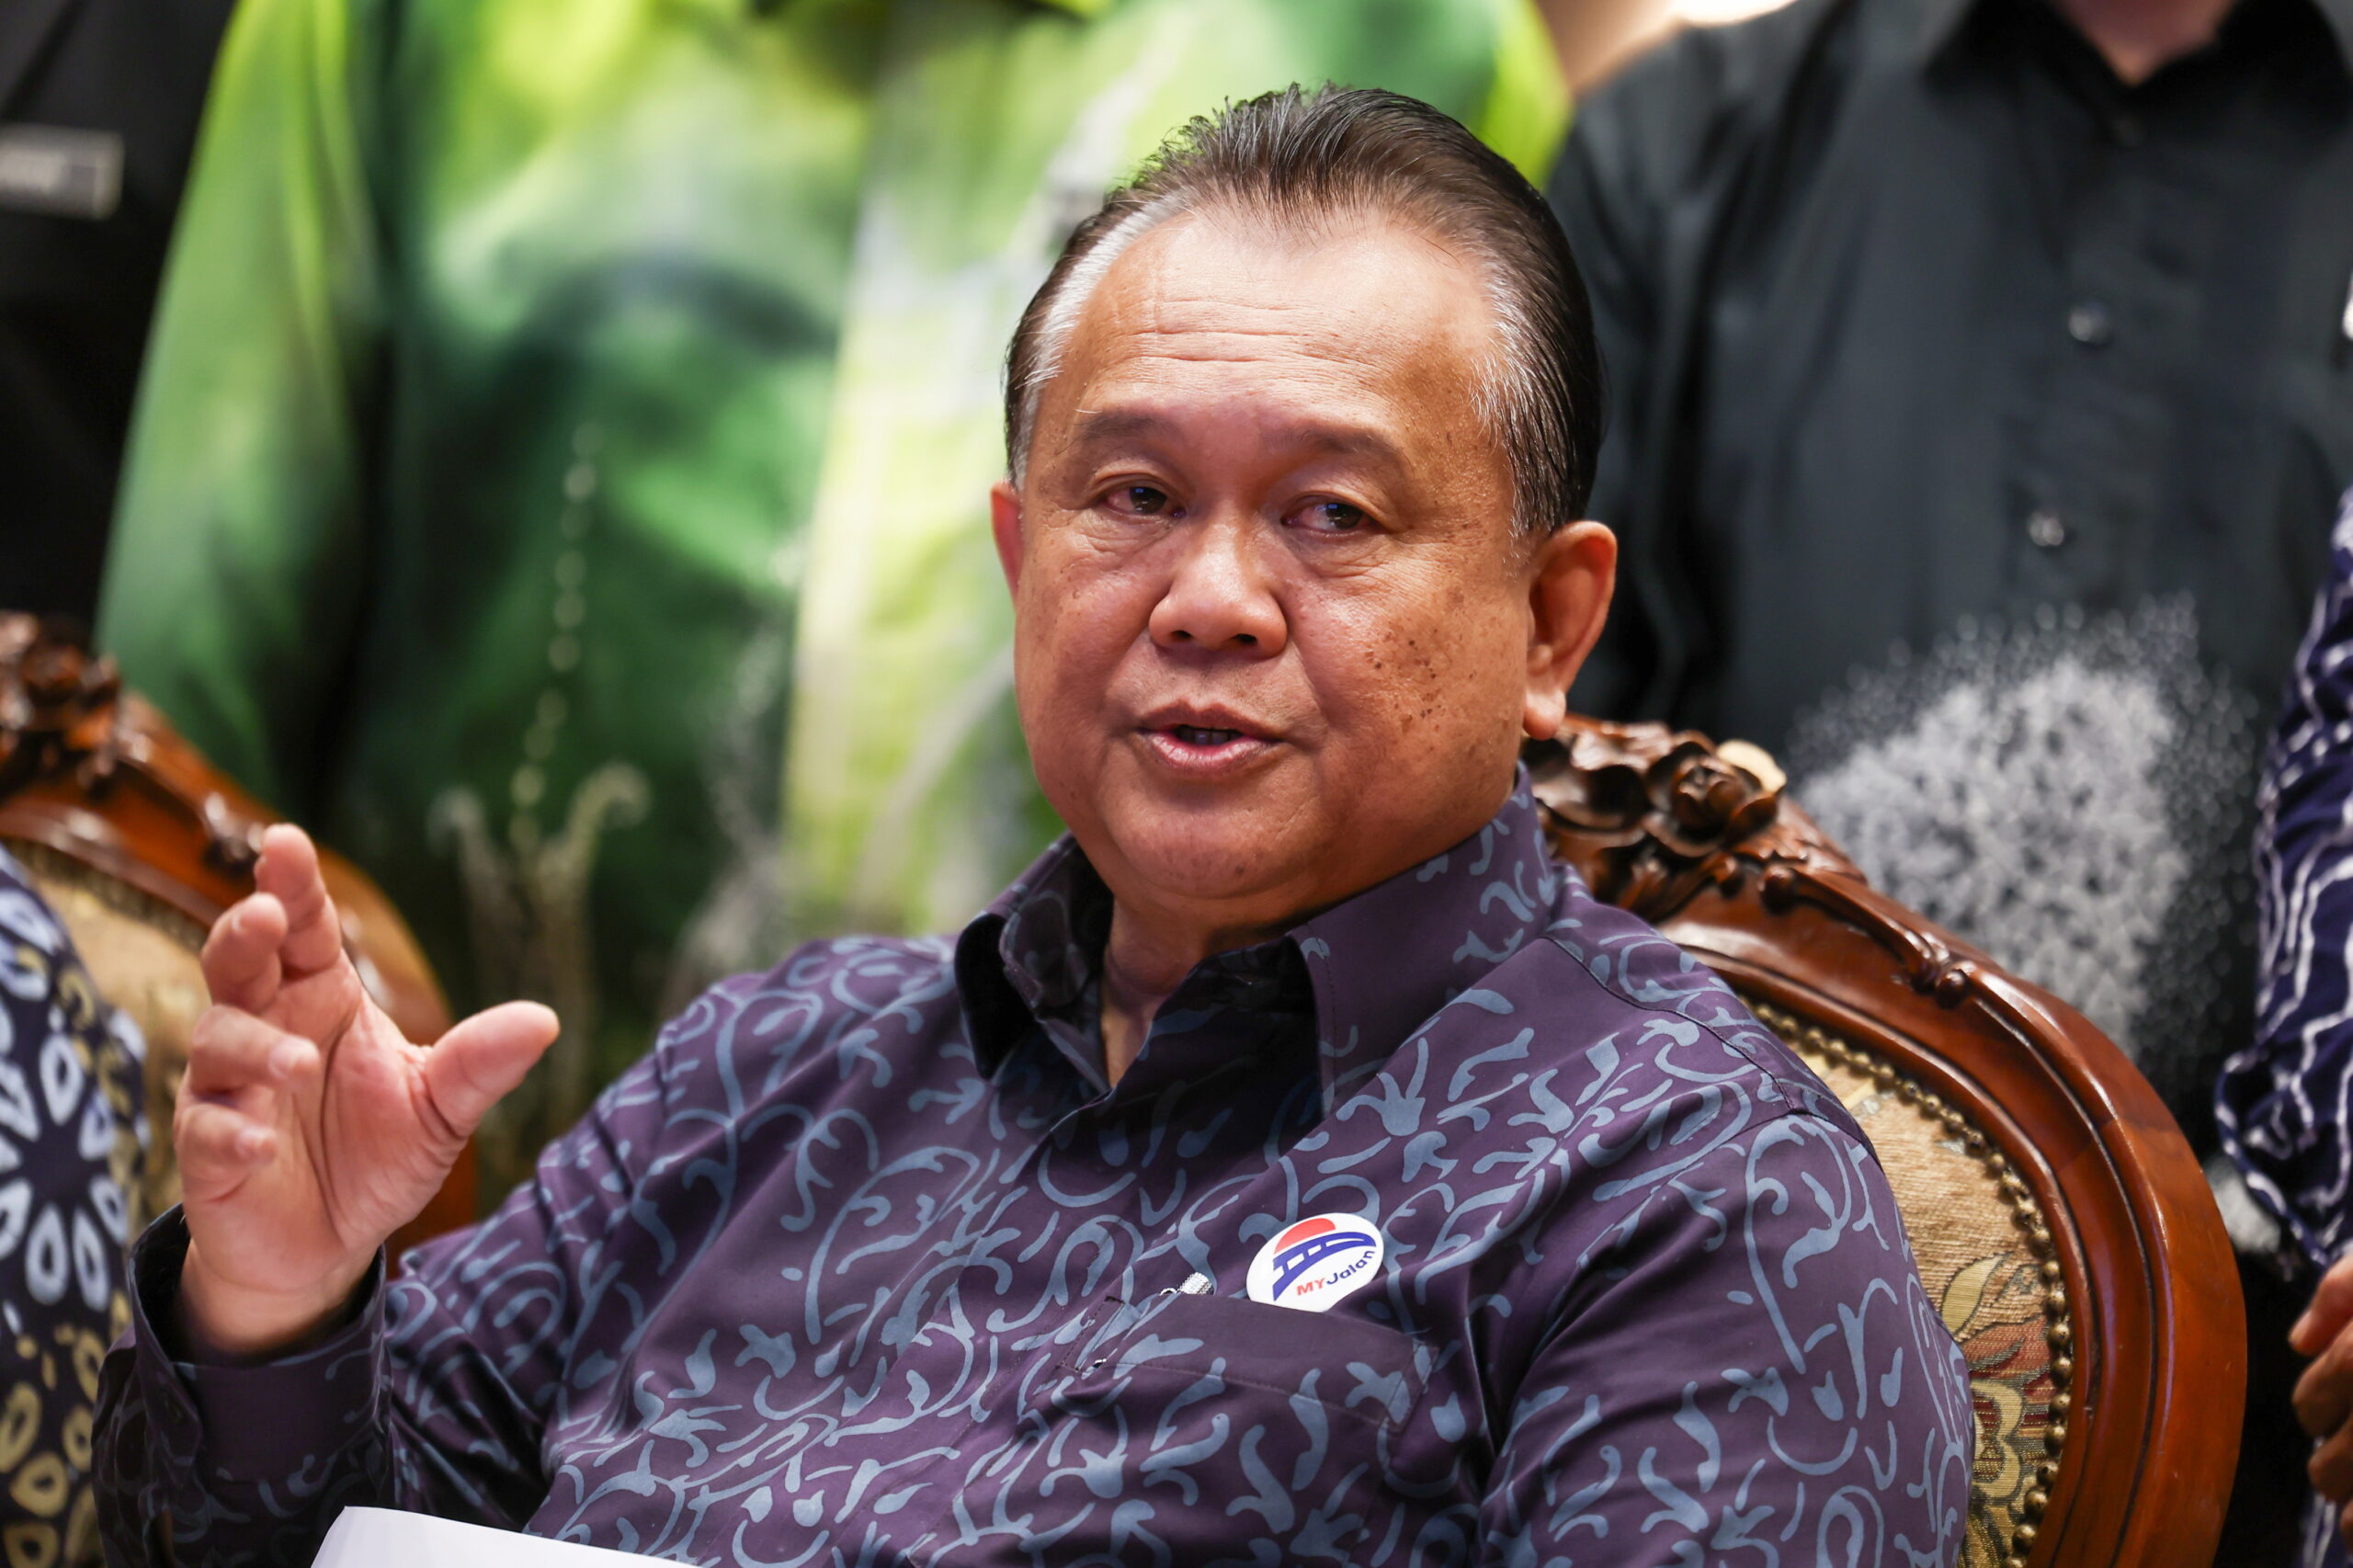 Projek Pan Borneo Sarawak dapat disiapkan tahun ini: Nanta